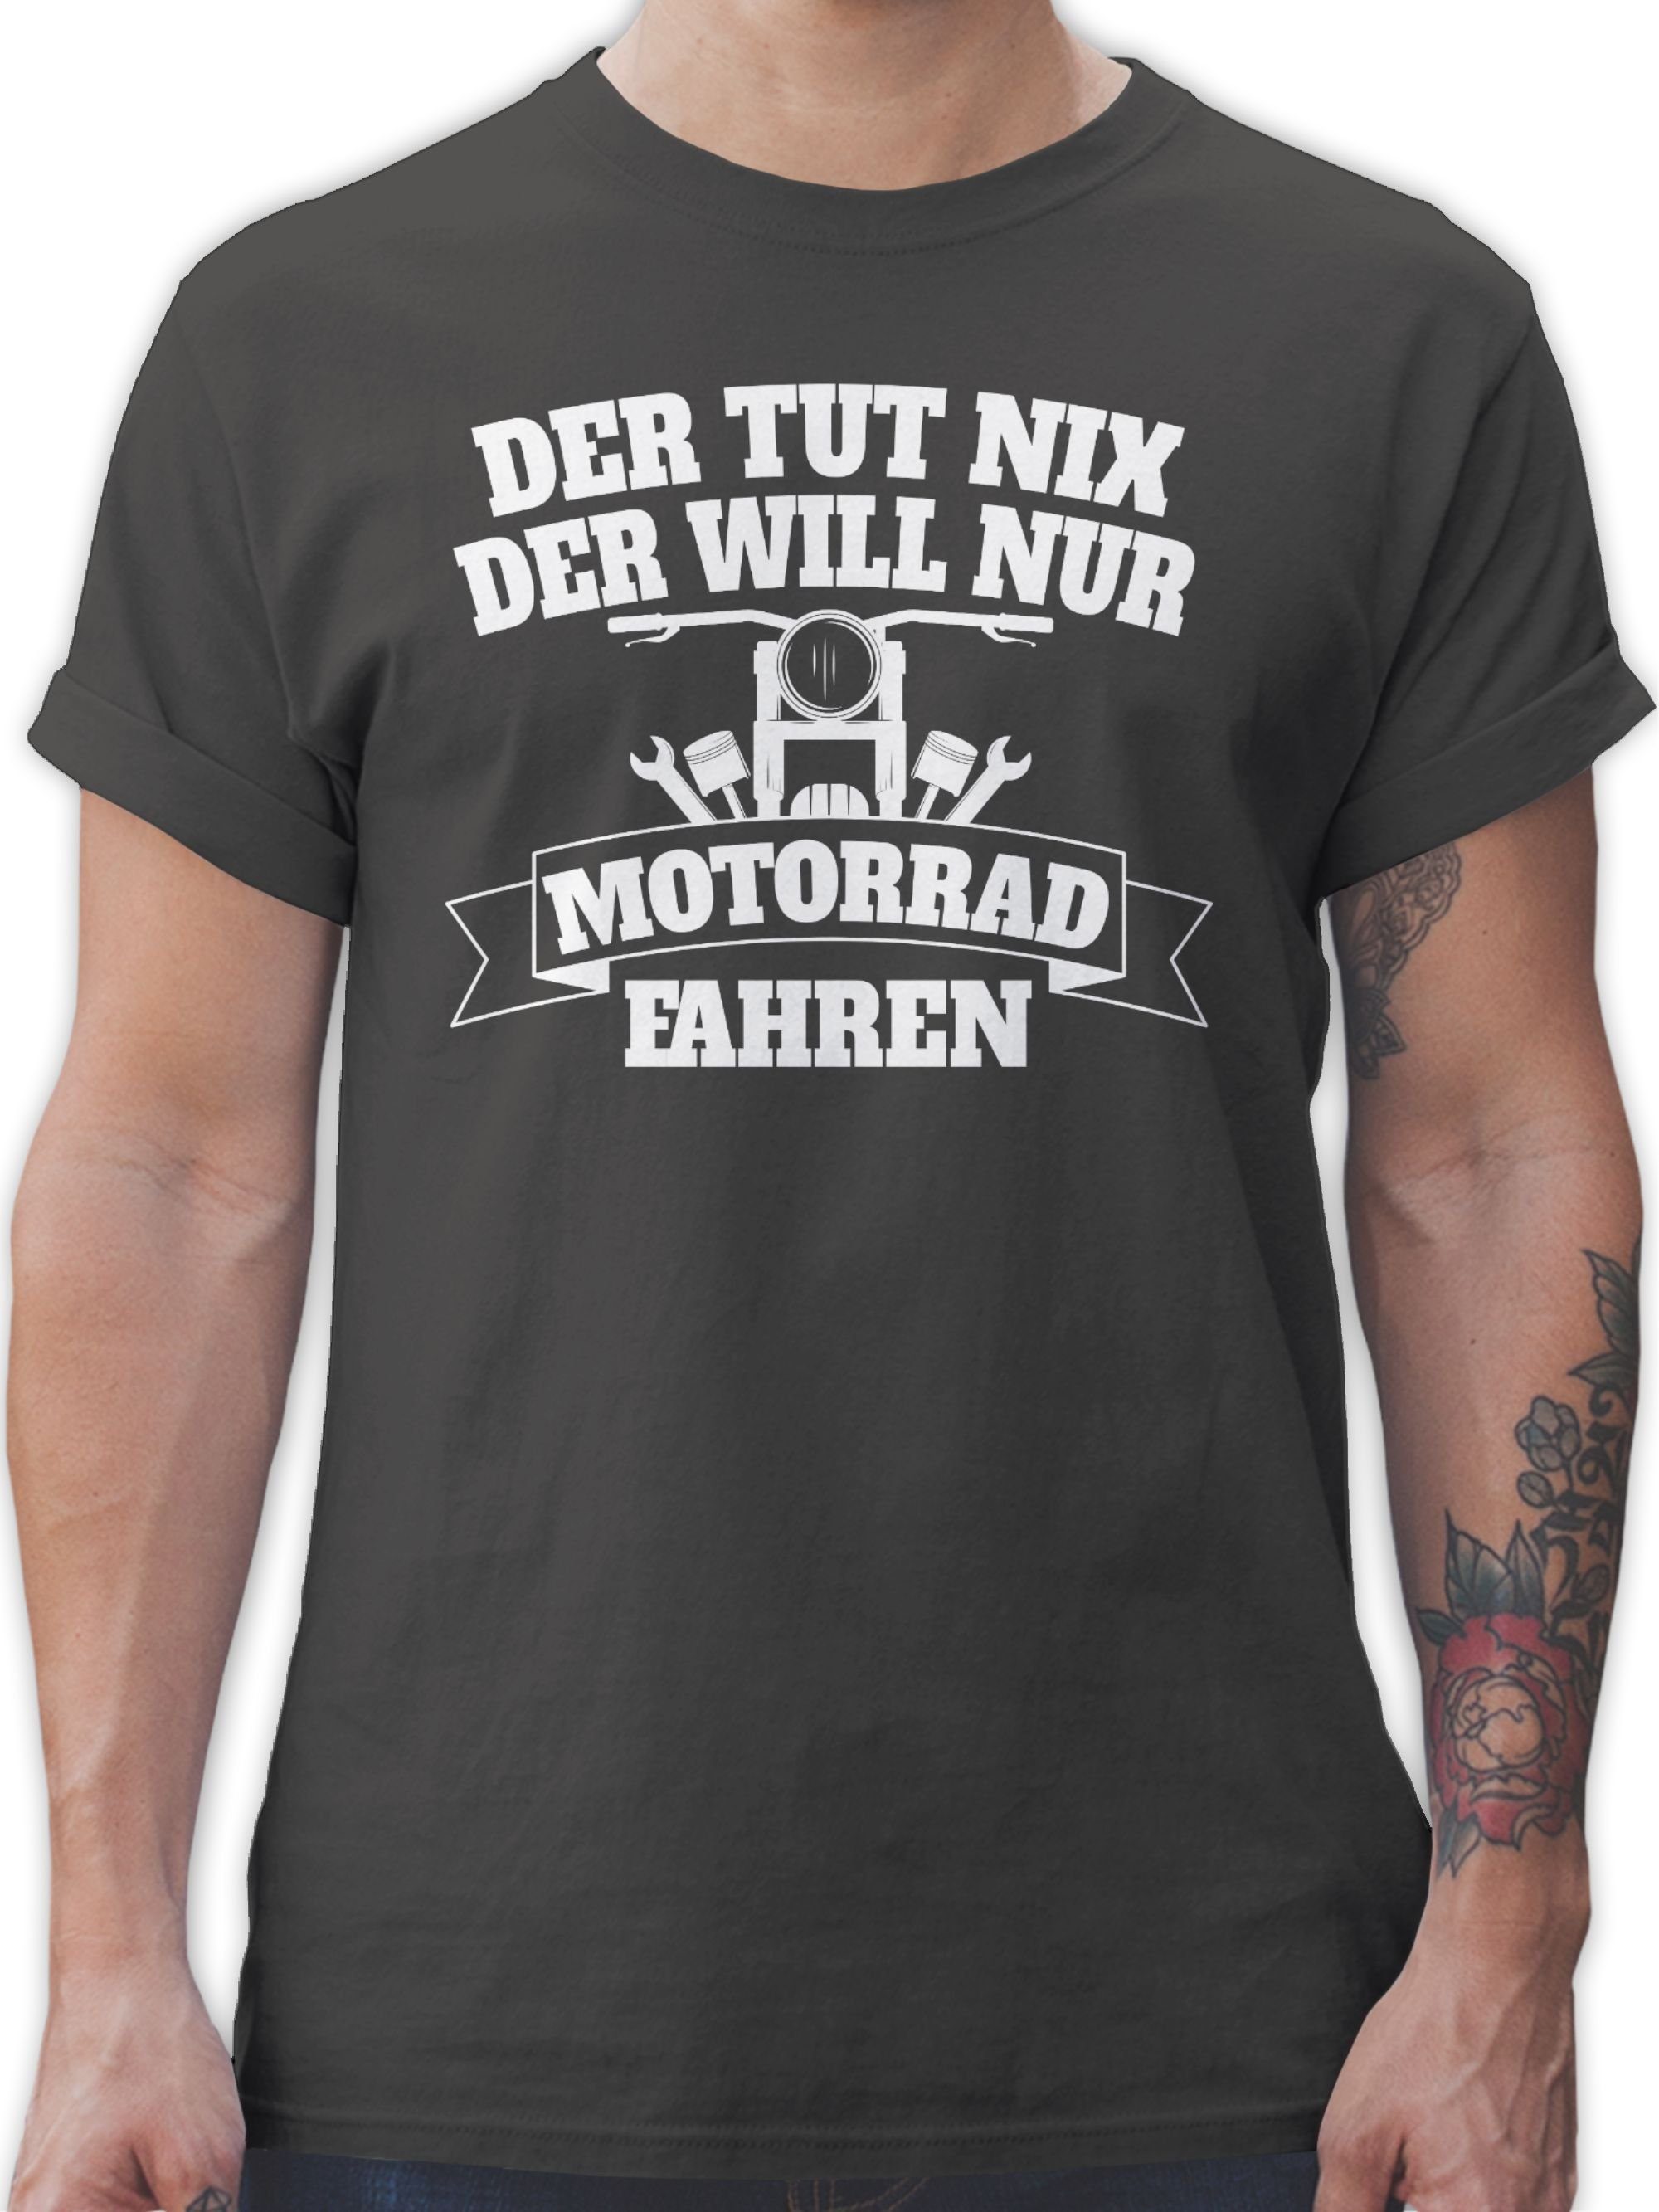 nur will T-Shirt Der 2 tut Biker der nix Shirtracer Dunkelgrau Motorrad fahren Motorrad